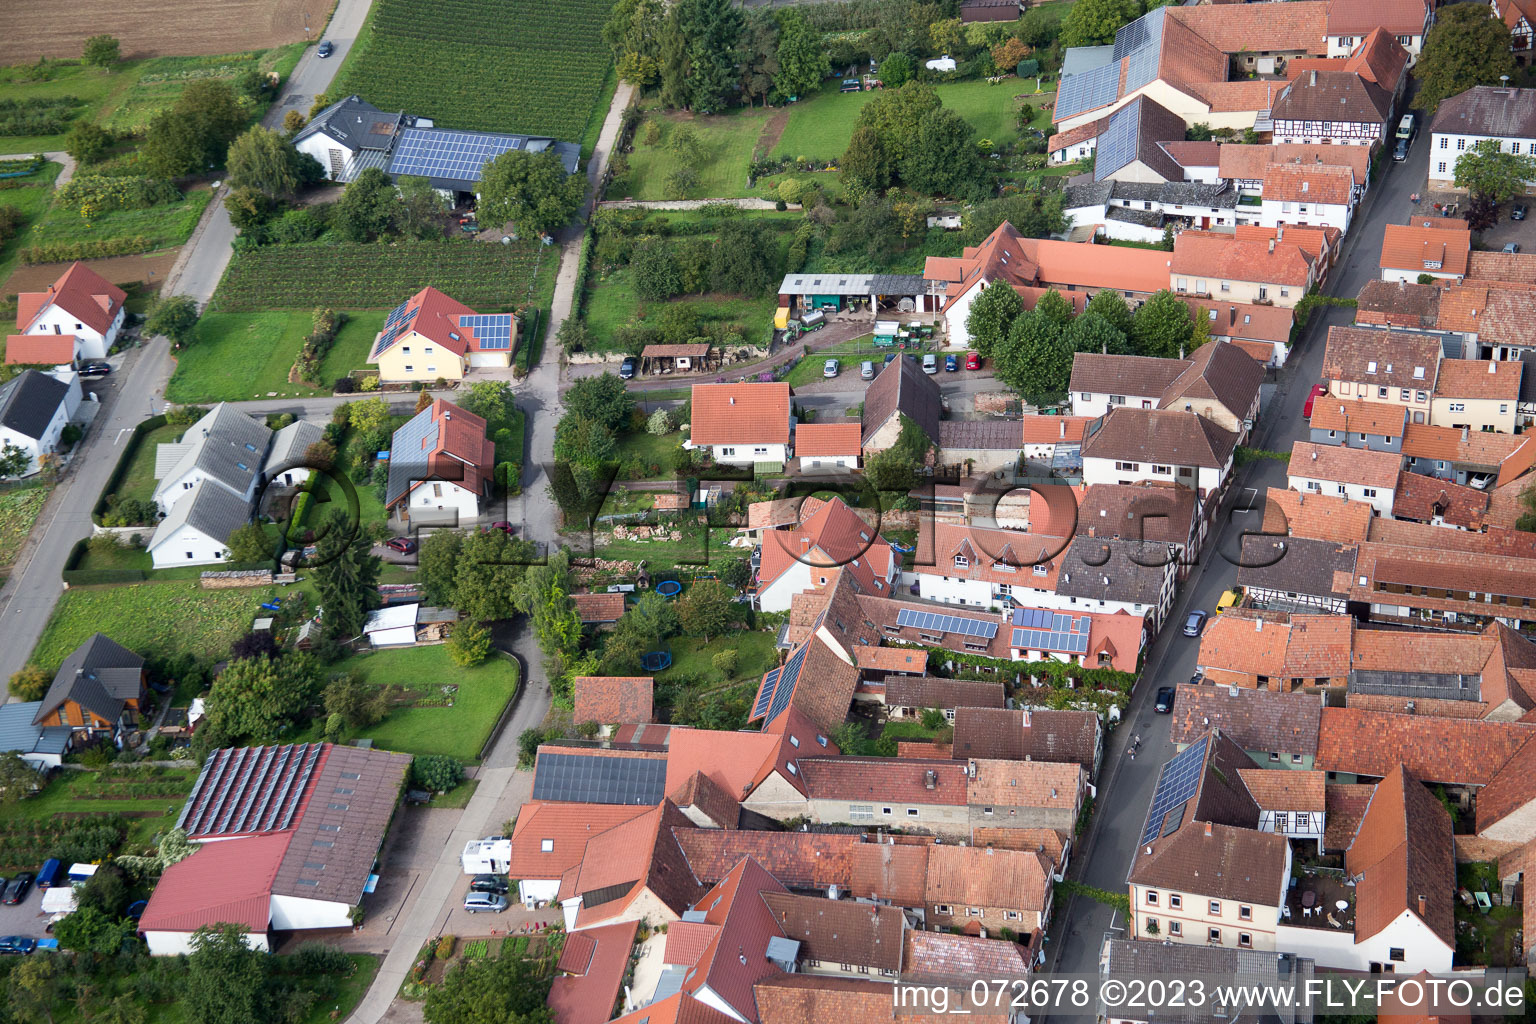 District Heuchelheim in Heuchelheim-Klingen in the state Rhineland-Palatinate, Germany from above